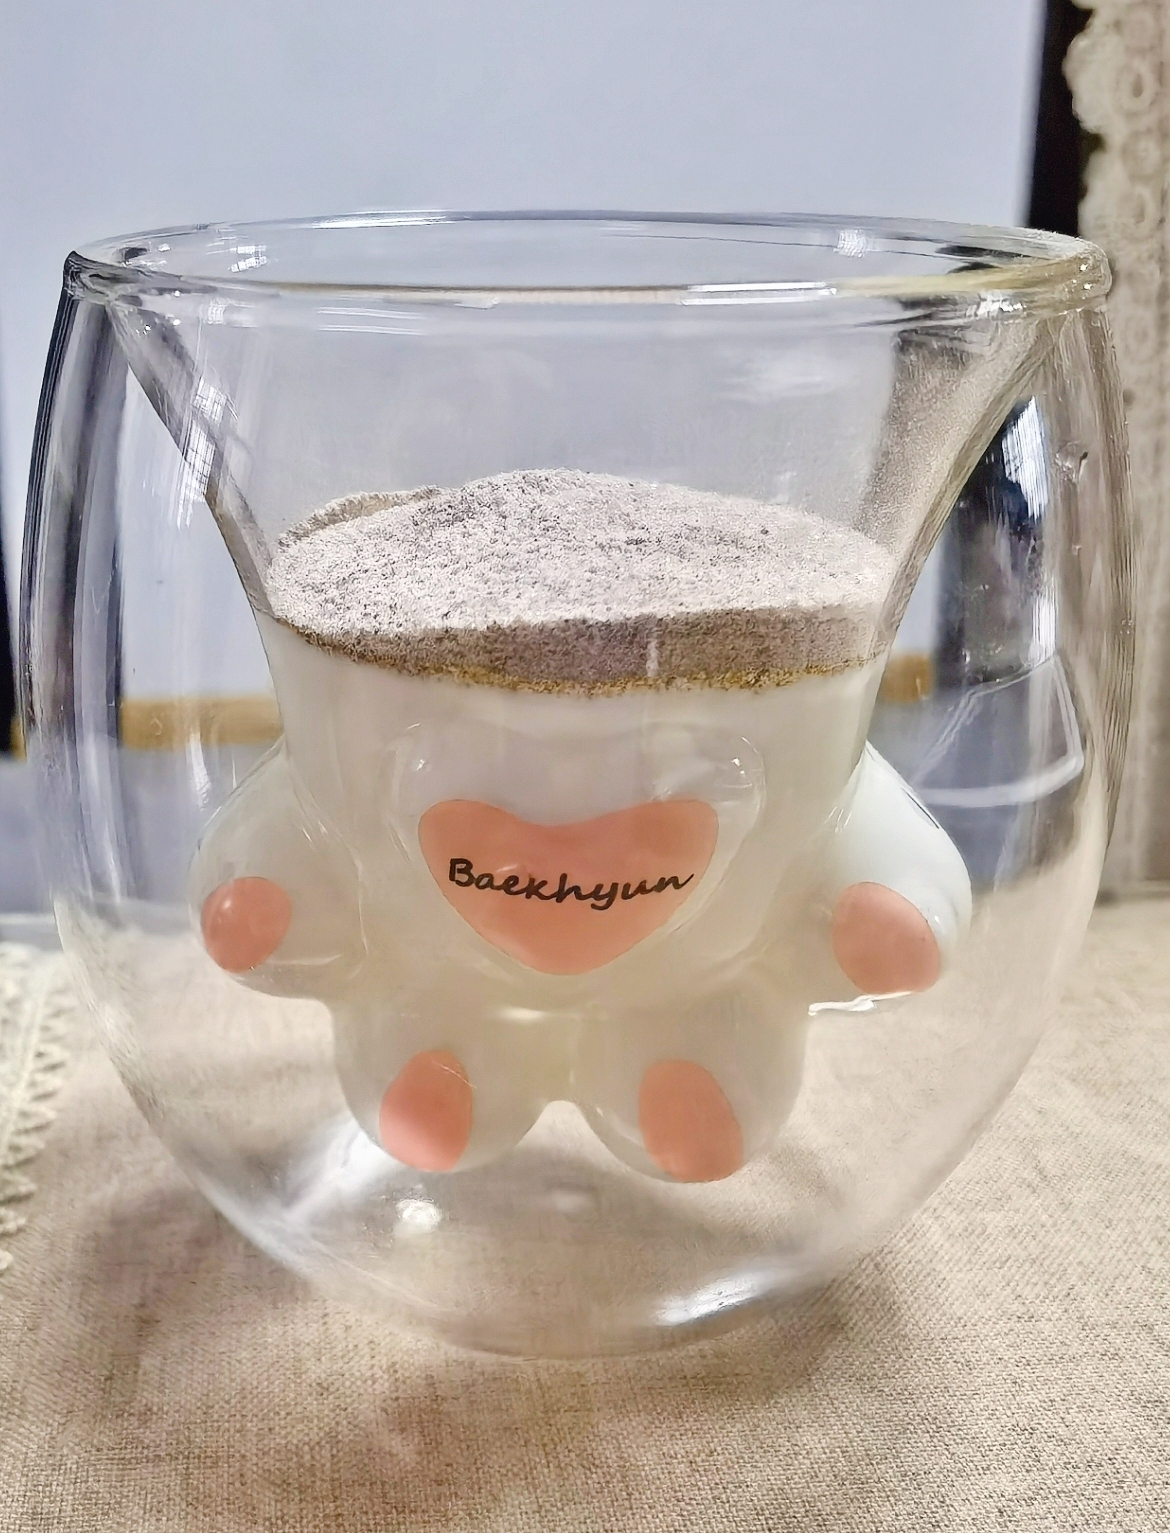 苦咖啡盆栽酸奶